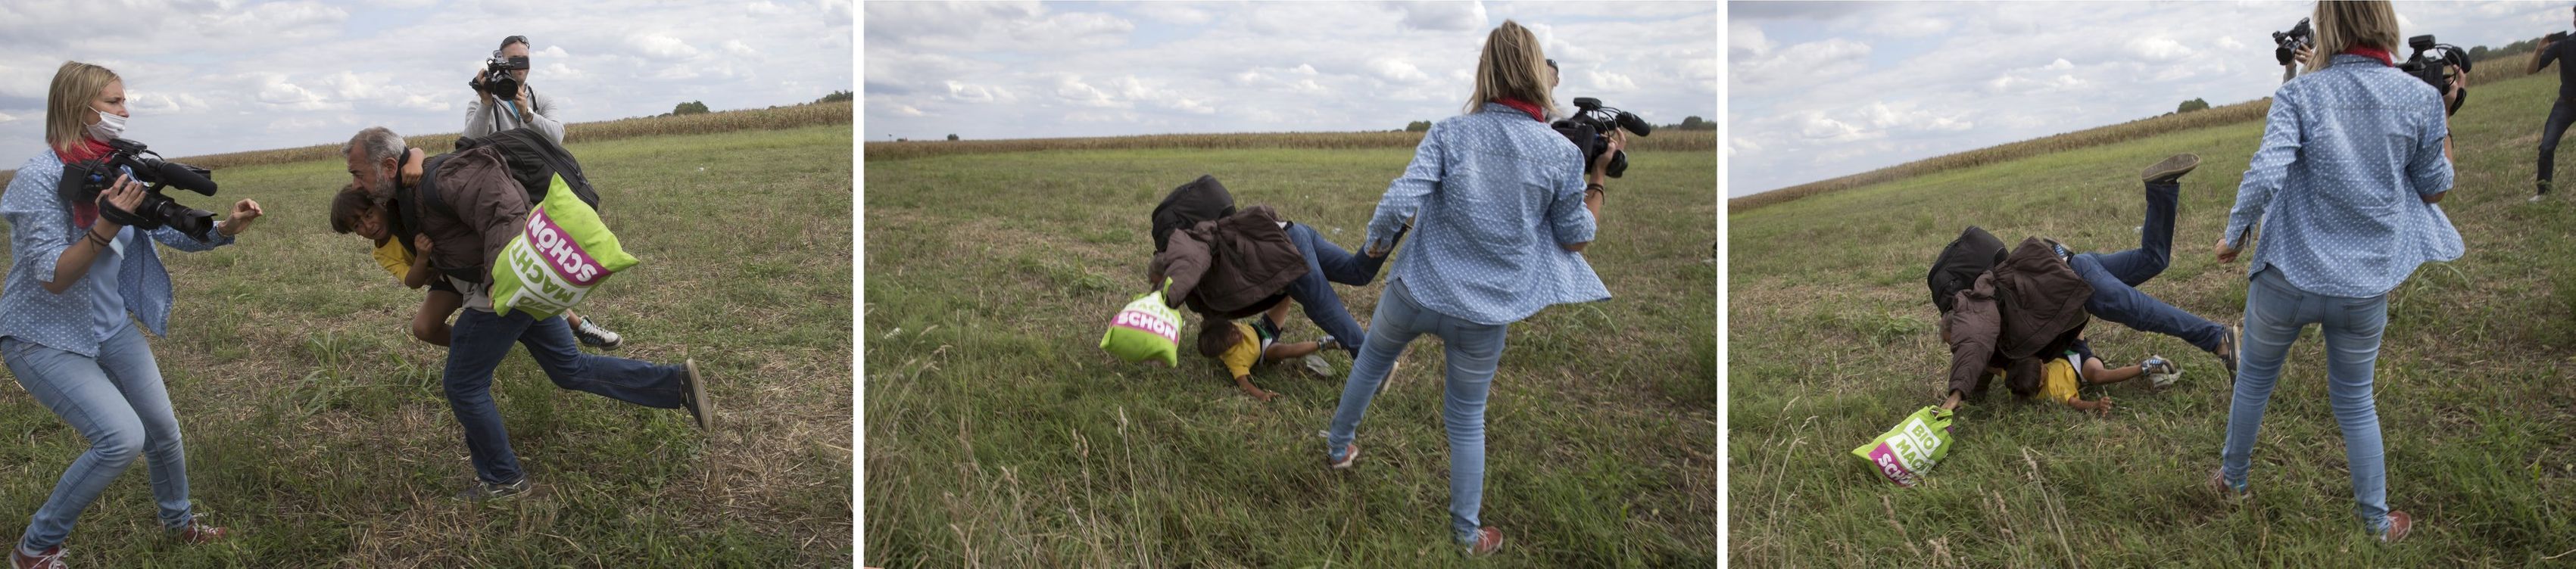 Kameramanka maďarské televize  N1TV podráží nohy uprchlíkovi s dítětem na maďarsko.srbské hranici.